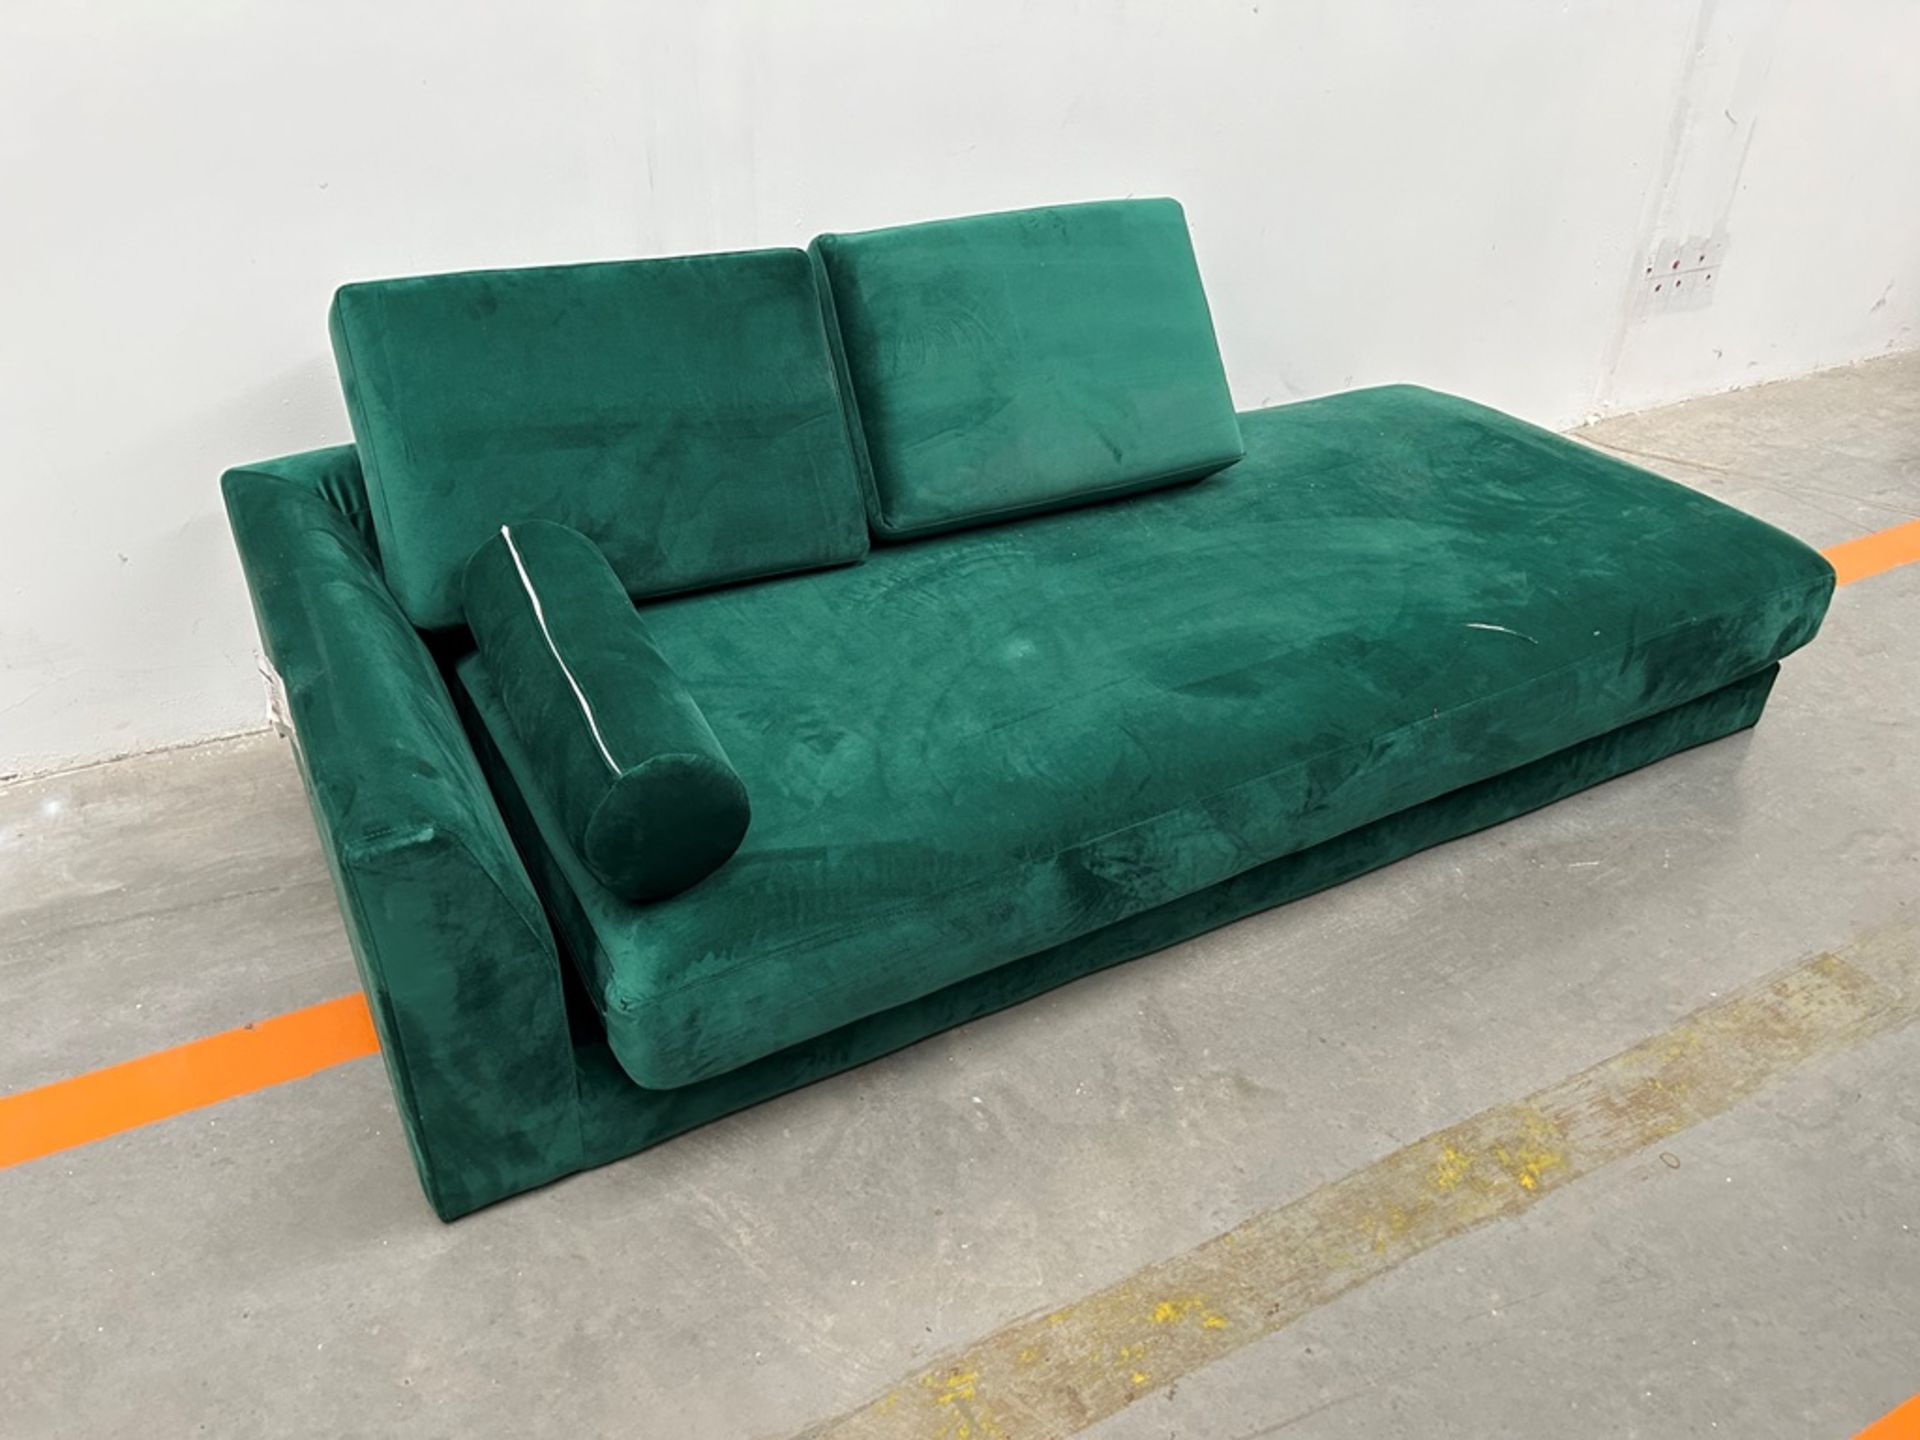 Lote de 2 artículos contiene: 1 diva reclinable verde; 1 sofá cama Marca HOMETRENDS (Equipo de devo - Image 3 of 7